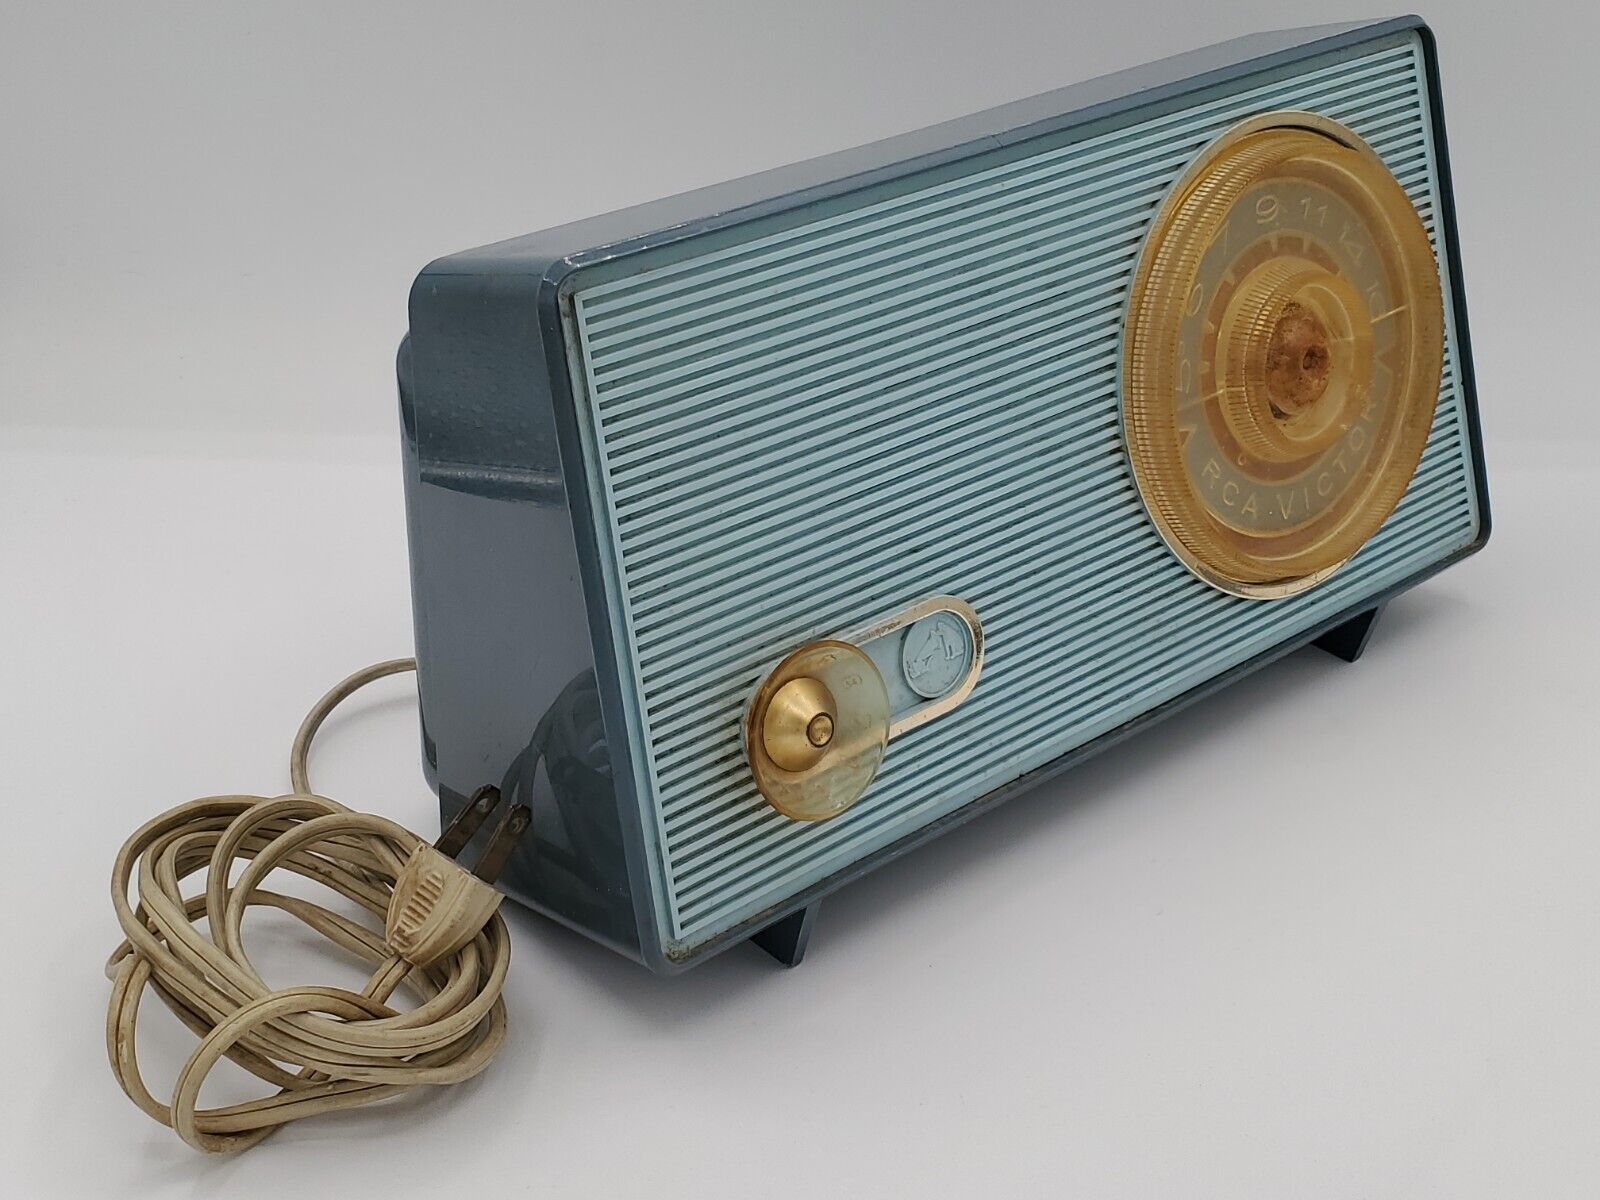 Vintage 1961 RCA Victor Broadcast Band Radio Vacuum Tubes Model 1-RA-42 - WORKS